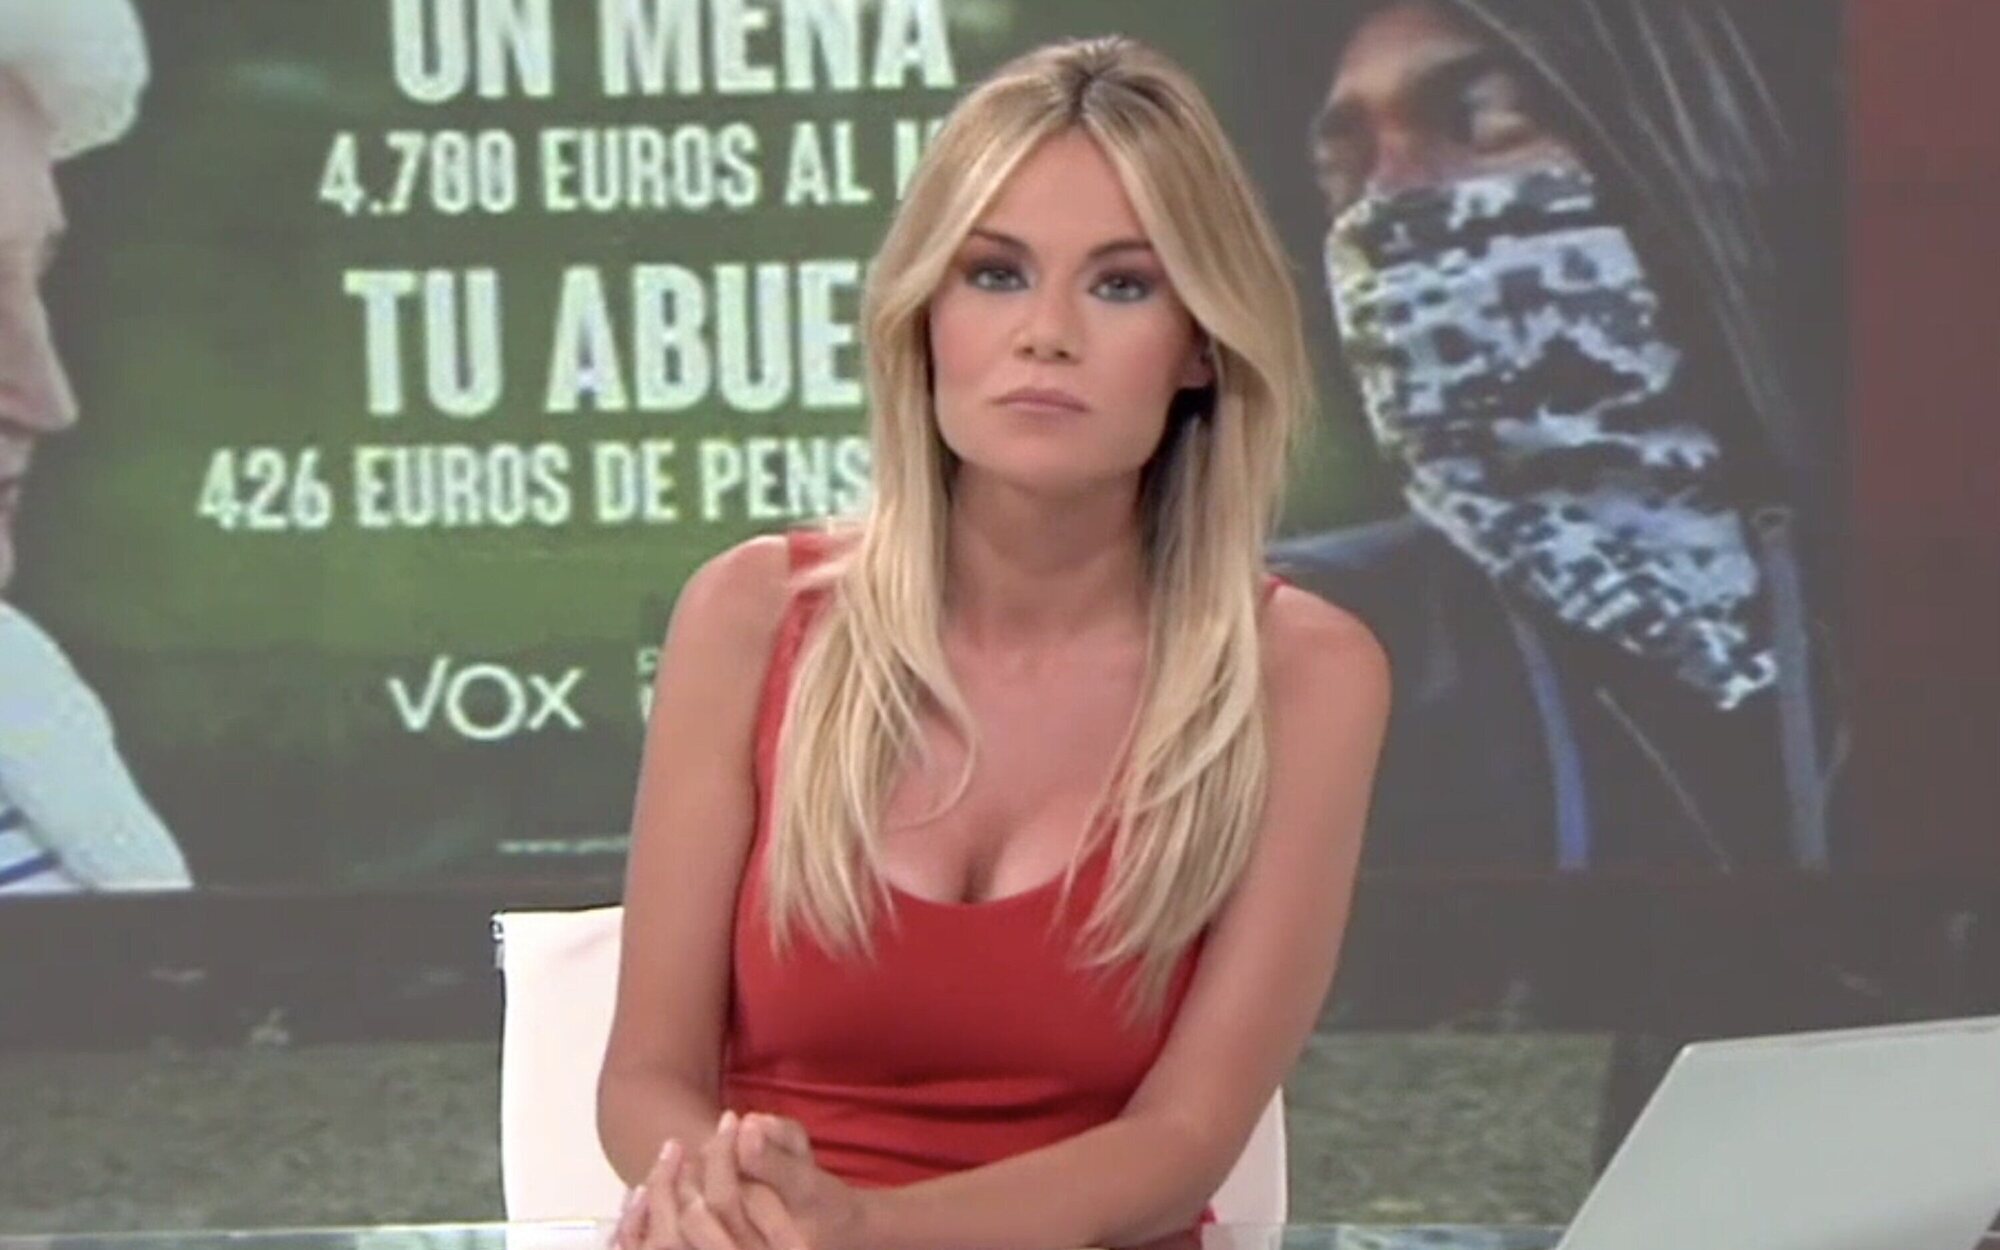 Rocío Delgado, presentadora de Telemadrid, denuncia en redes el acoso sexual que sufrió por la calle: "Zorra" 